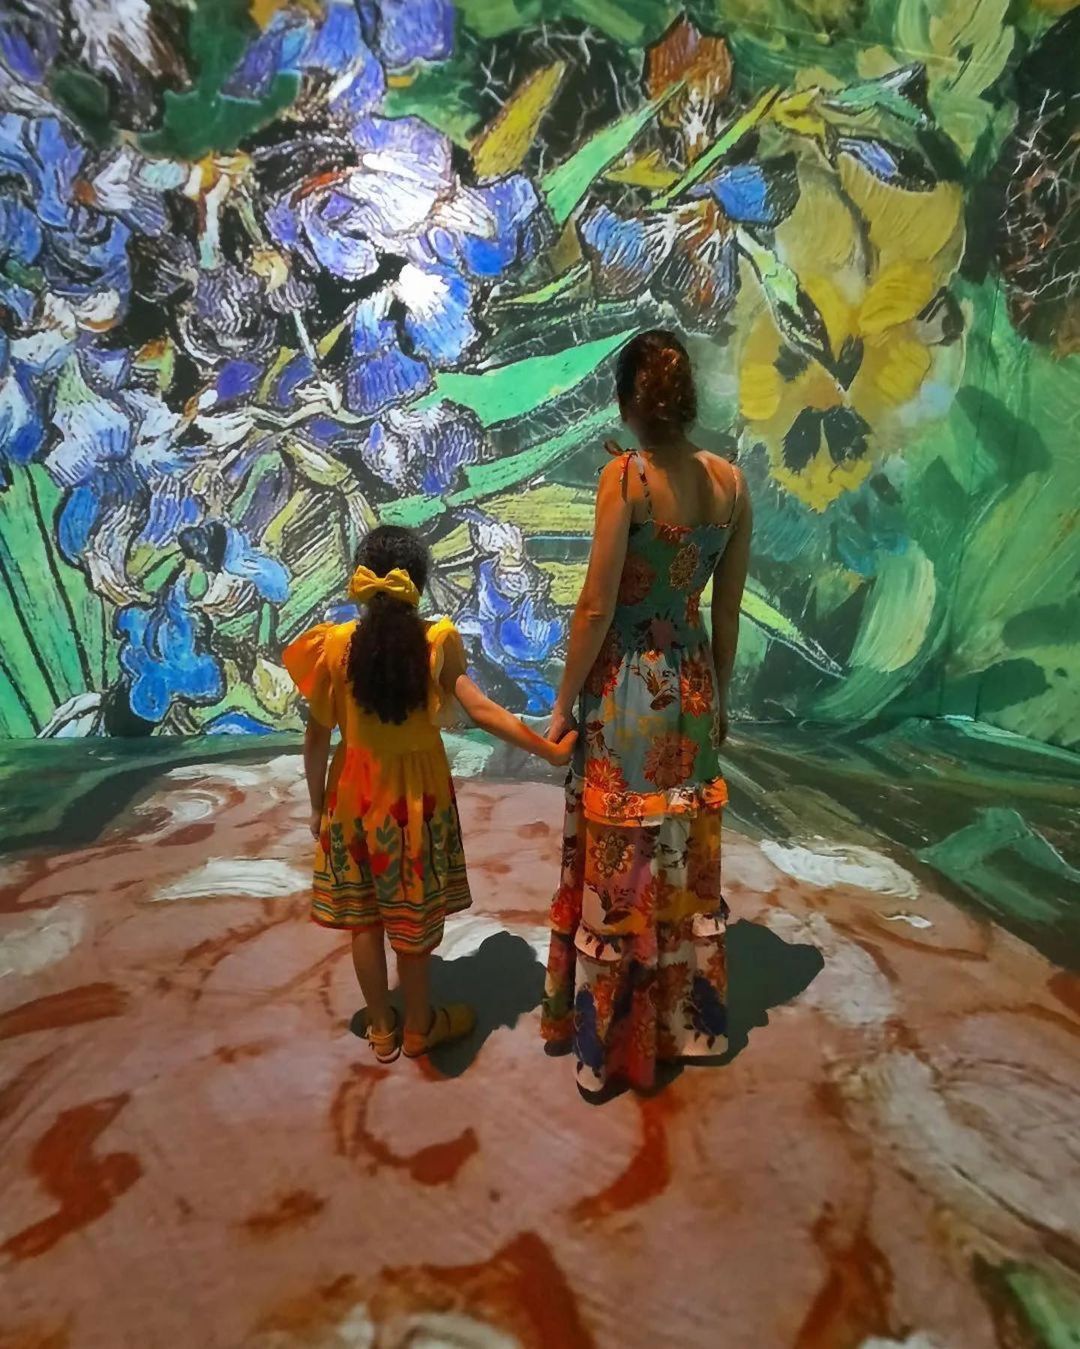 Exposição Van Gogh 8k promove ação especial para o Dia das Mães